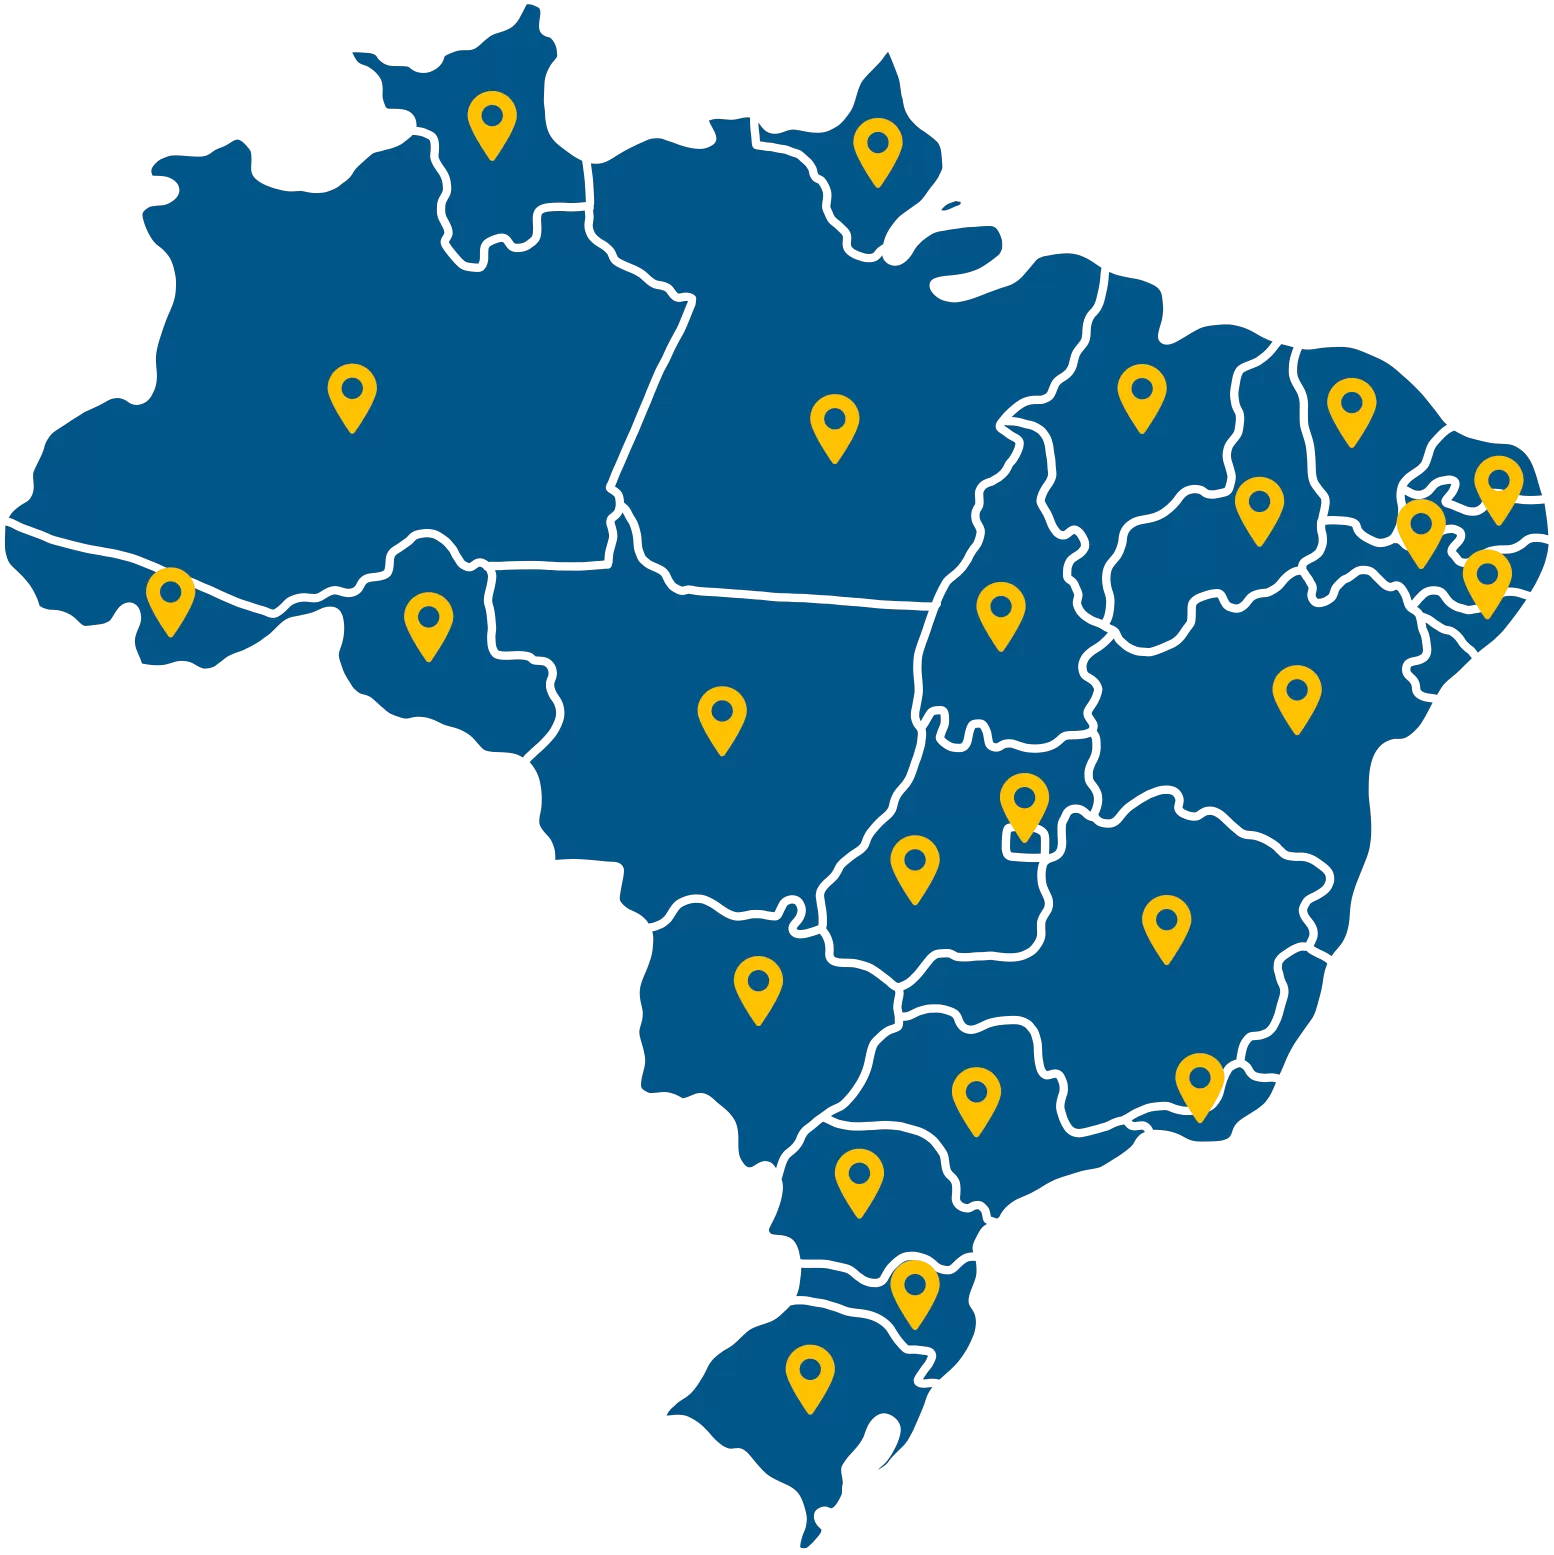 Imagem mapa do Brasil com marcações nos estados onde a Facioli está presente.